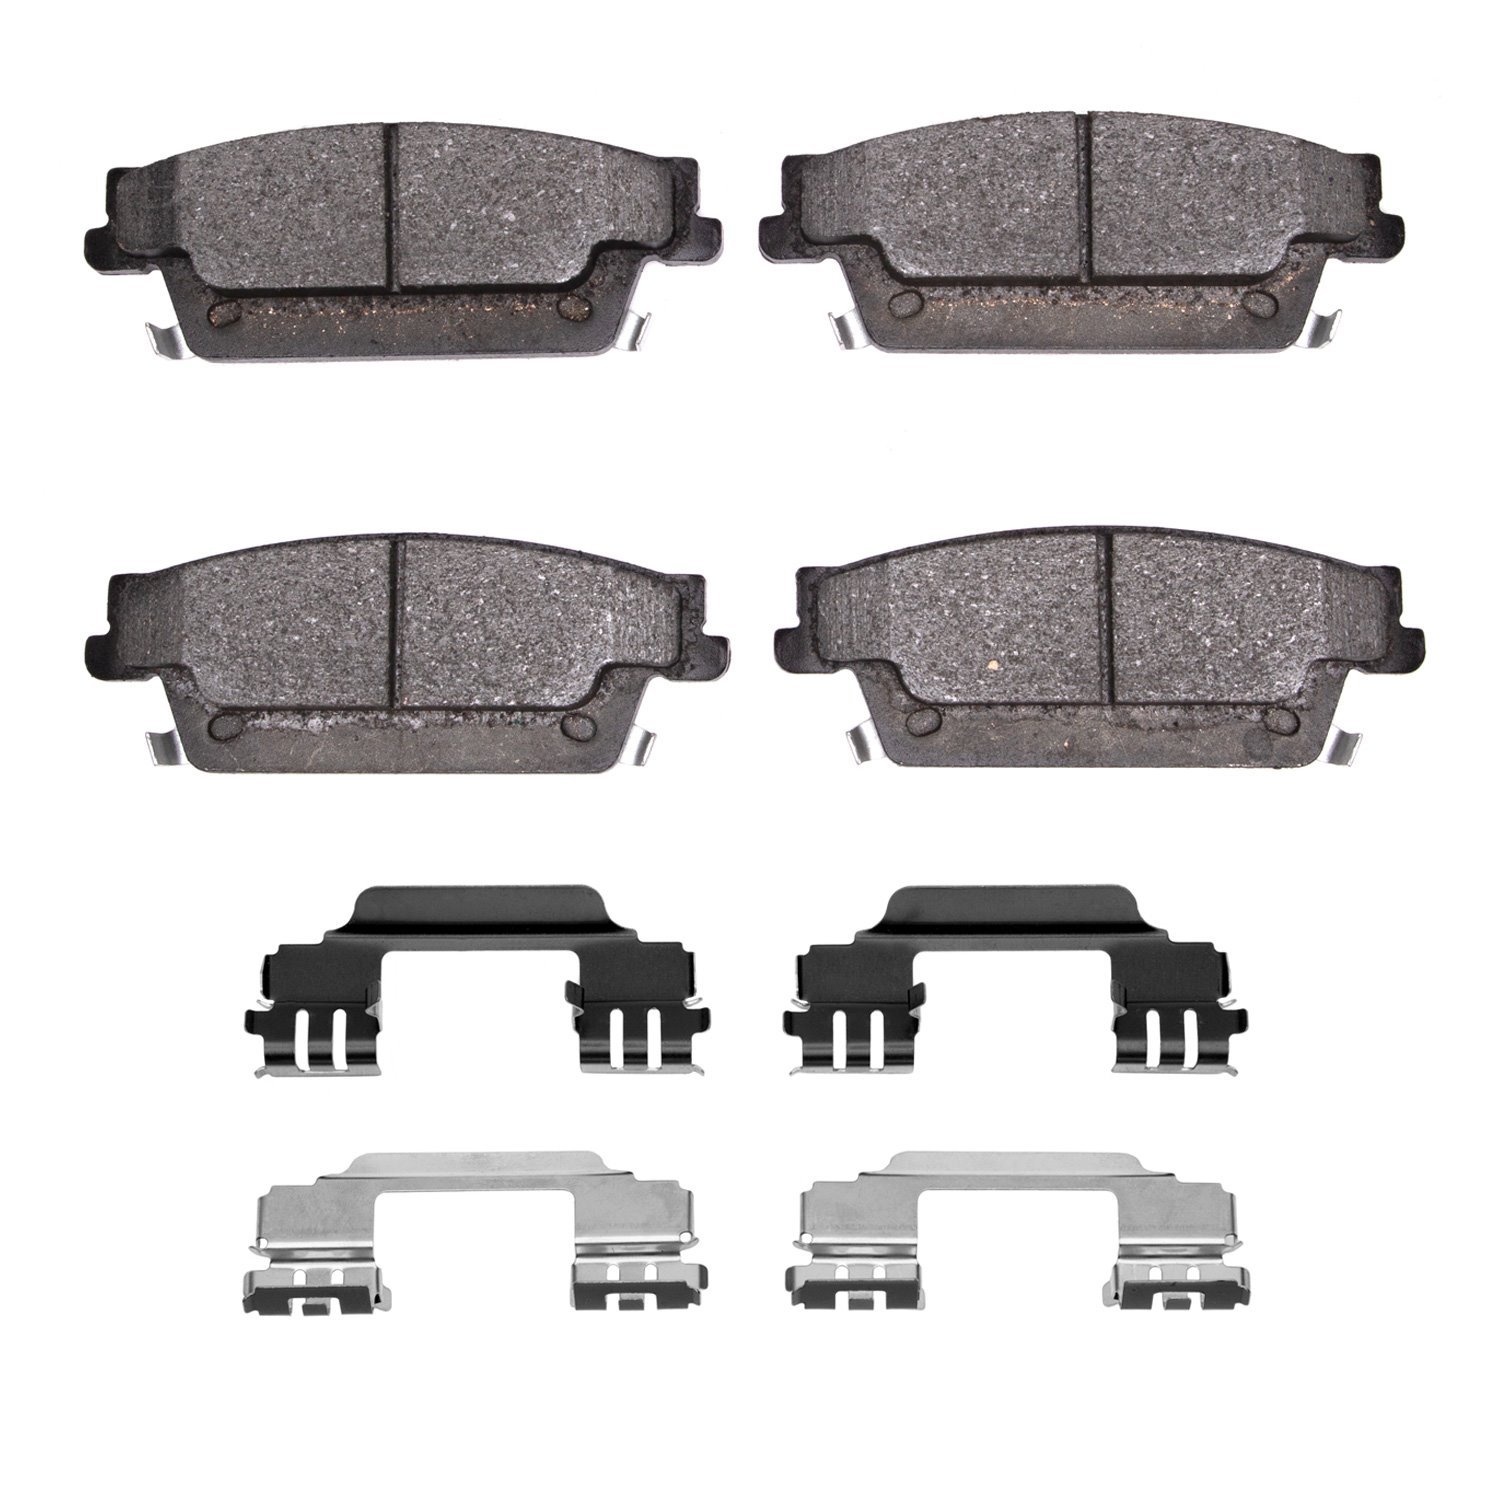 1600-1020-01 5000 Euro Ceramic Brake Pads & Hardware Kit, 2004-2011 GM, Position: Rear